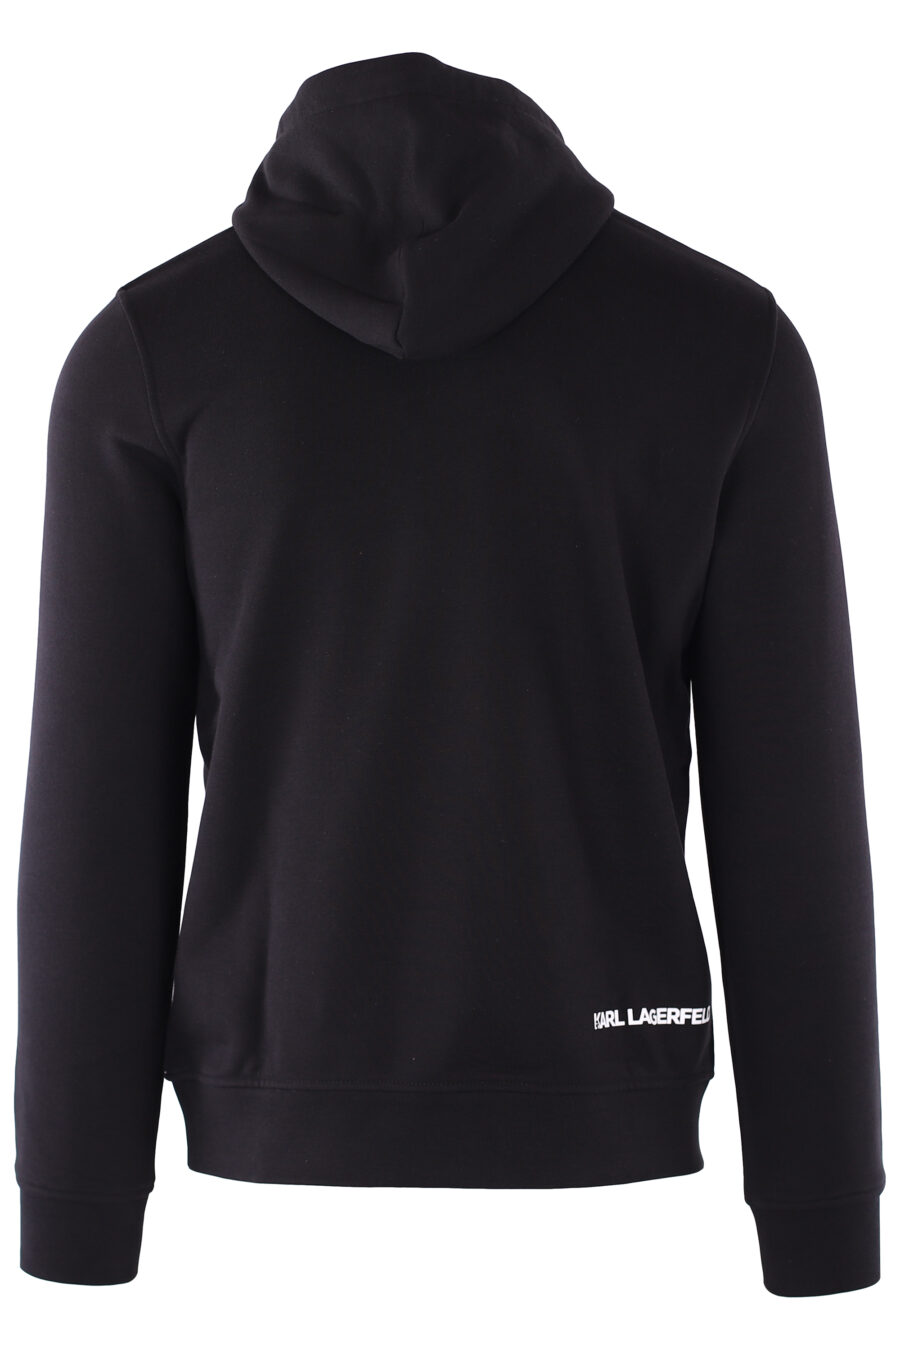 Schwarzes Sweatshirt mit Kapuze und Logo "ikonik" klein - IMG 6404